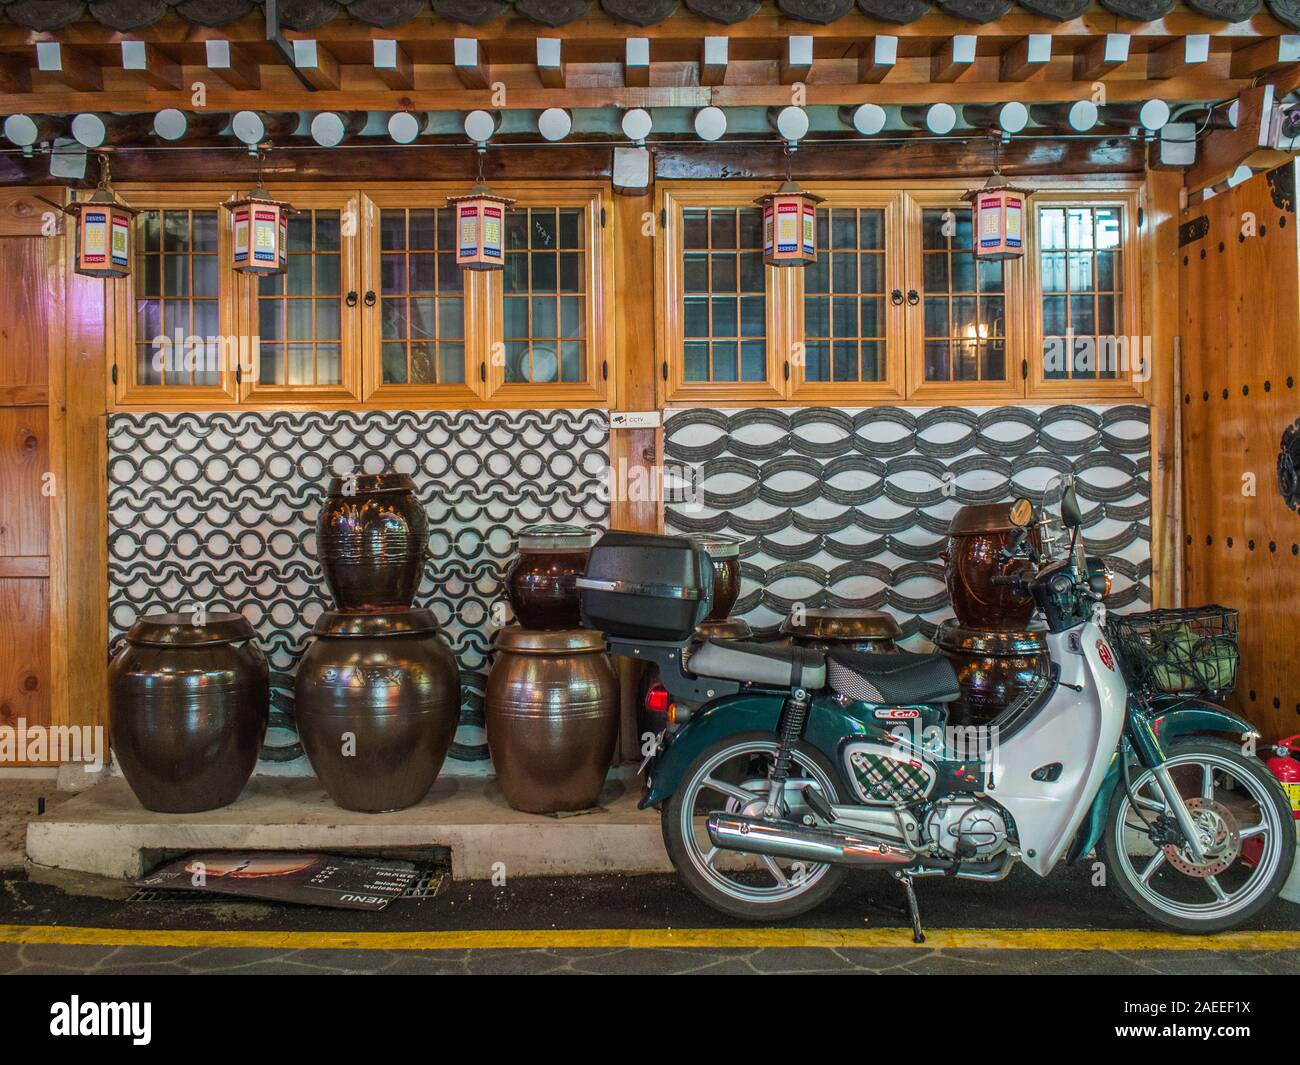 Honda Super Cub moto, parcheggiato al di fuori del tradizionale casa hanok, piastrelle decorative a parete, vasetti di decapaggio, Gyeongbokgung, Seoul COREA DEL SUD Foto Stock